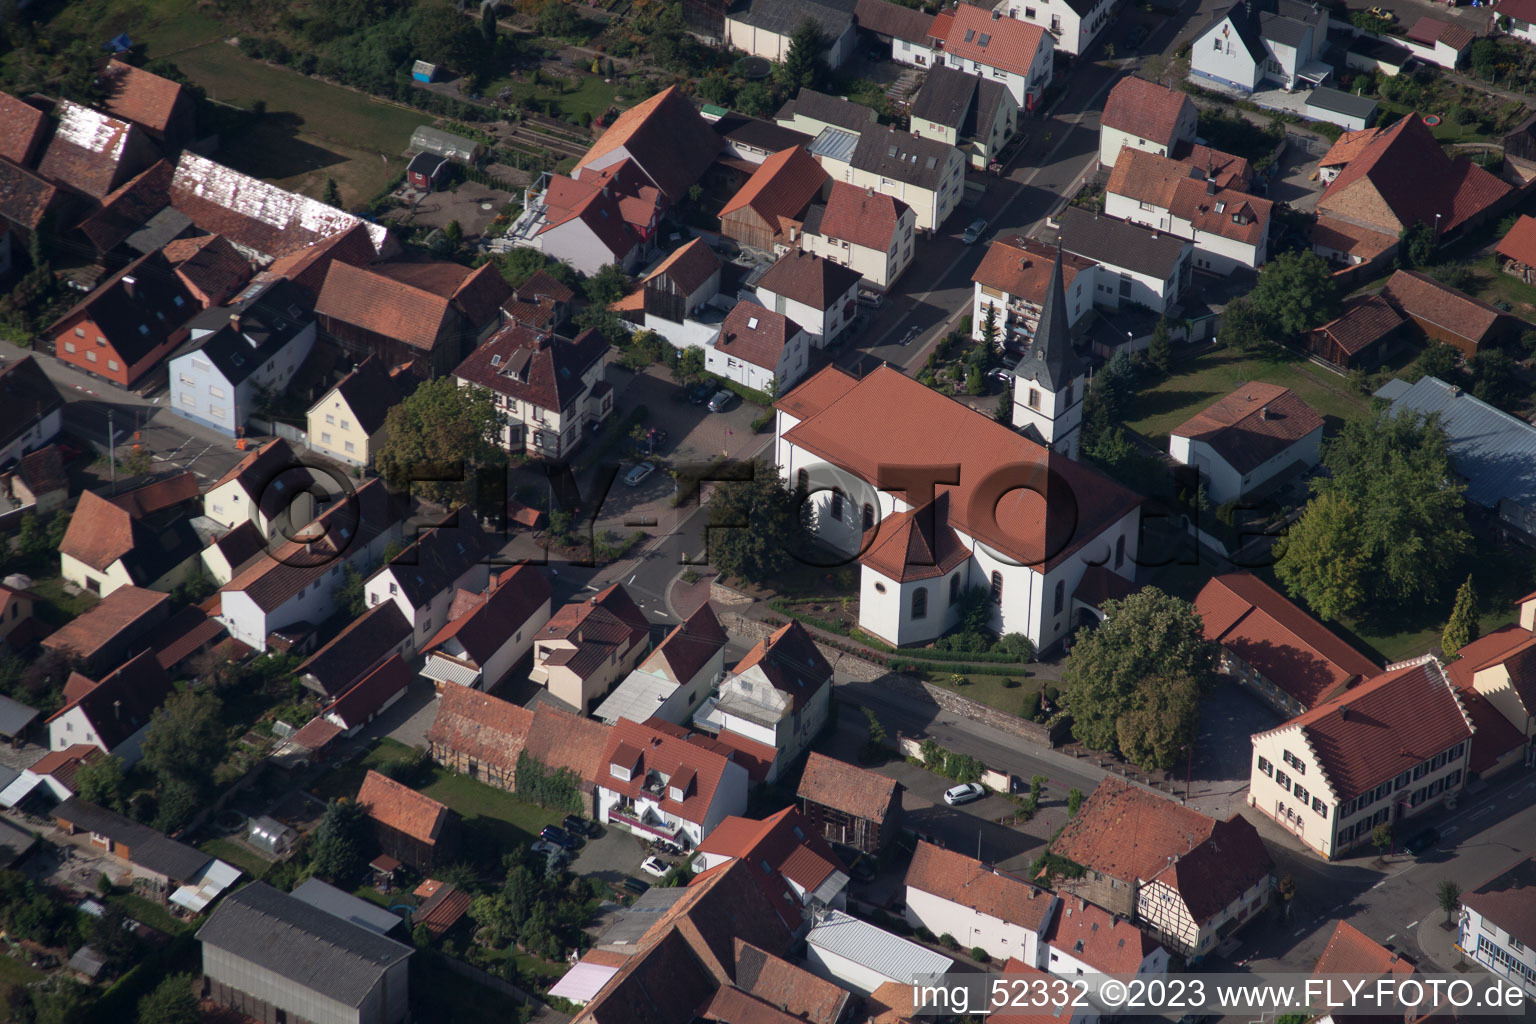 Hatzenbühl im Bundesland Rheinland-Pfalz, Deutschland aus der Luft betrachtet